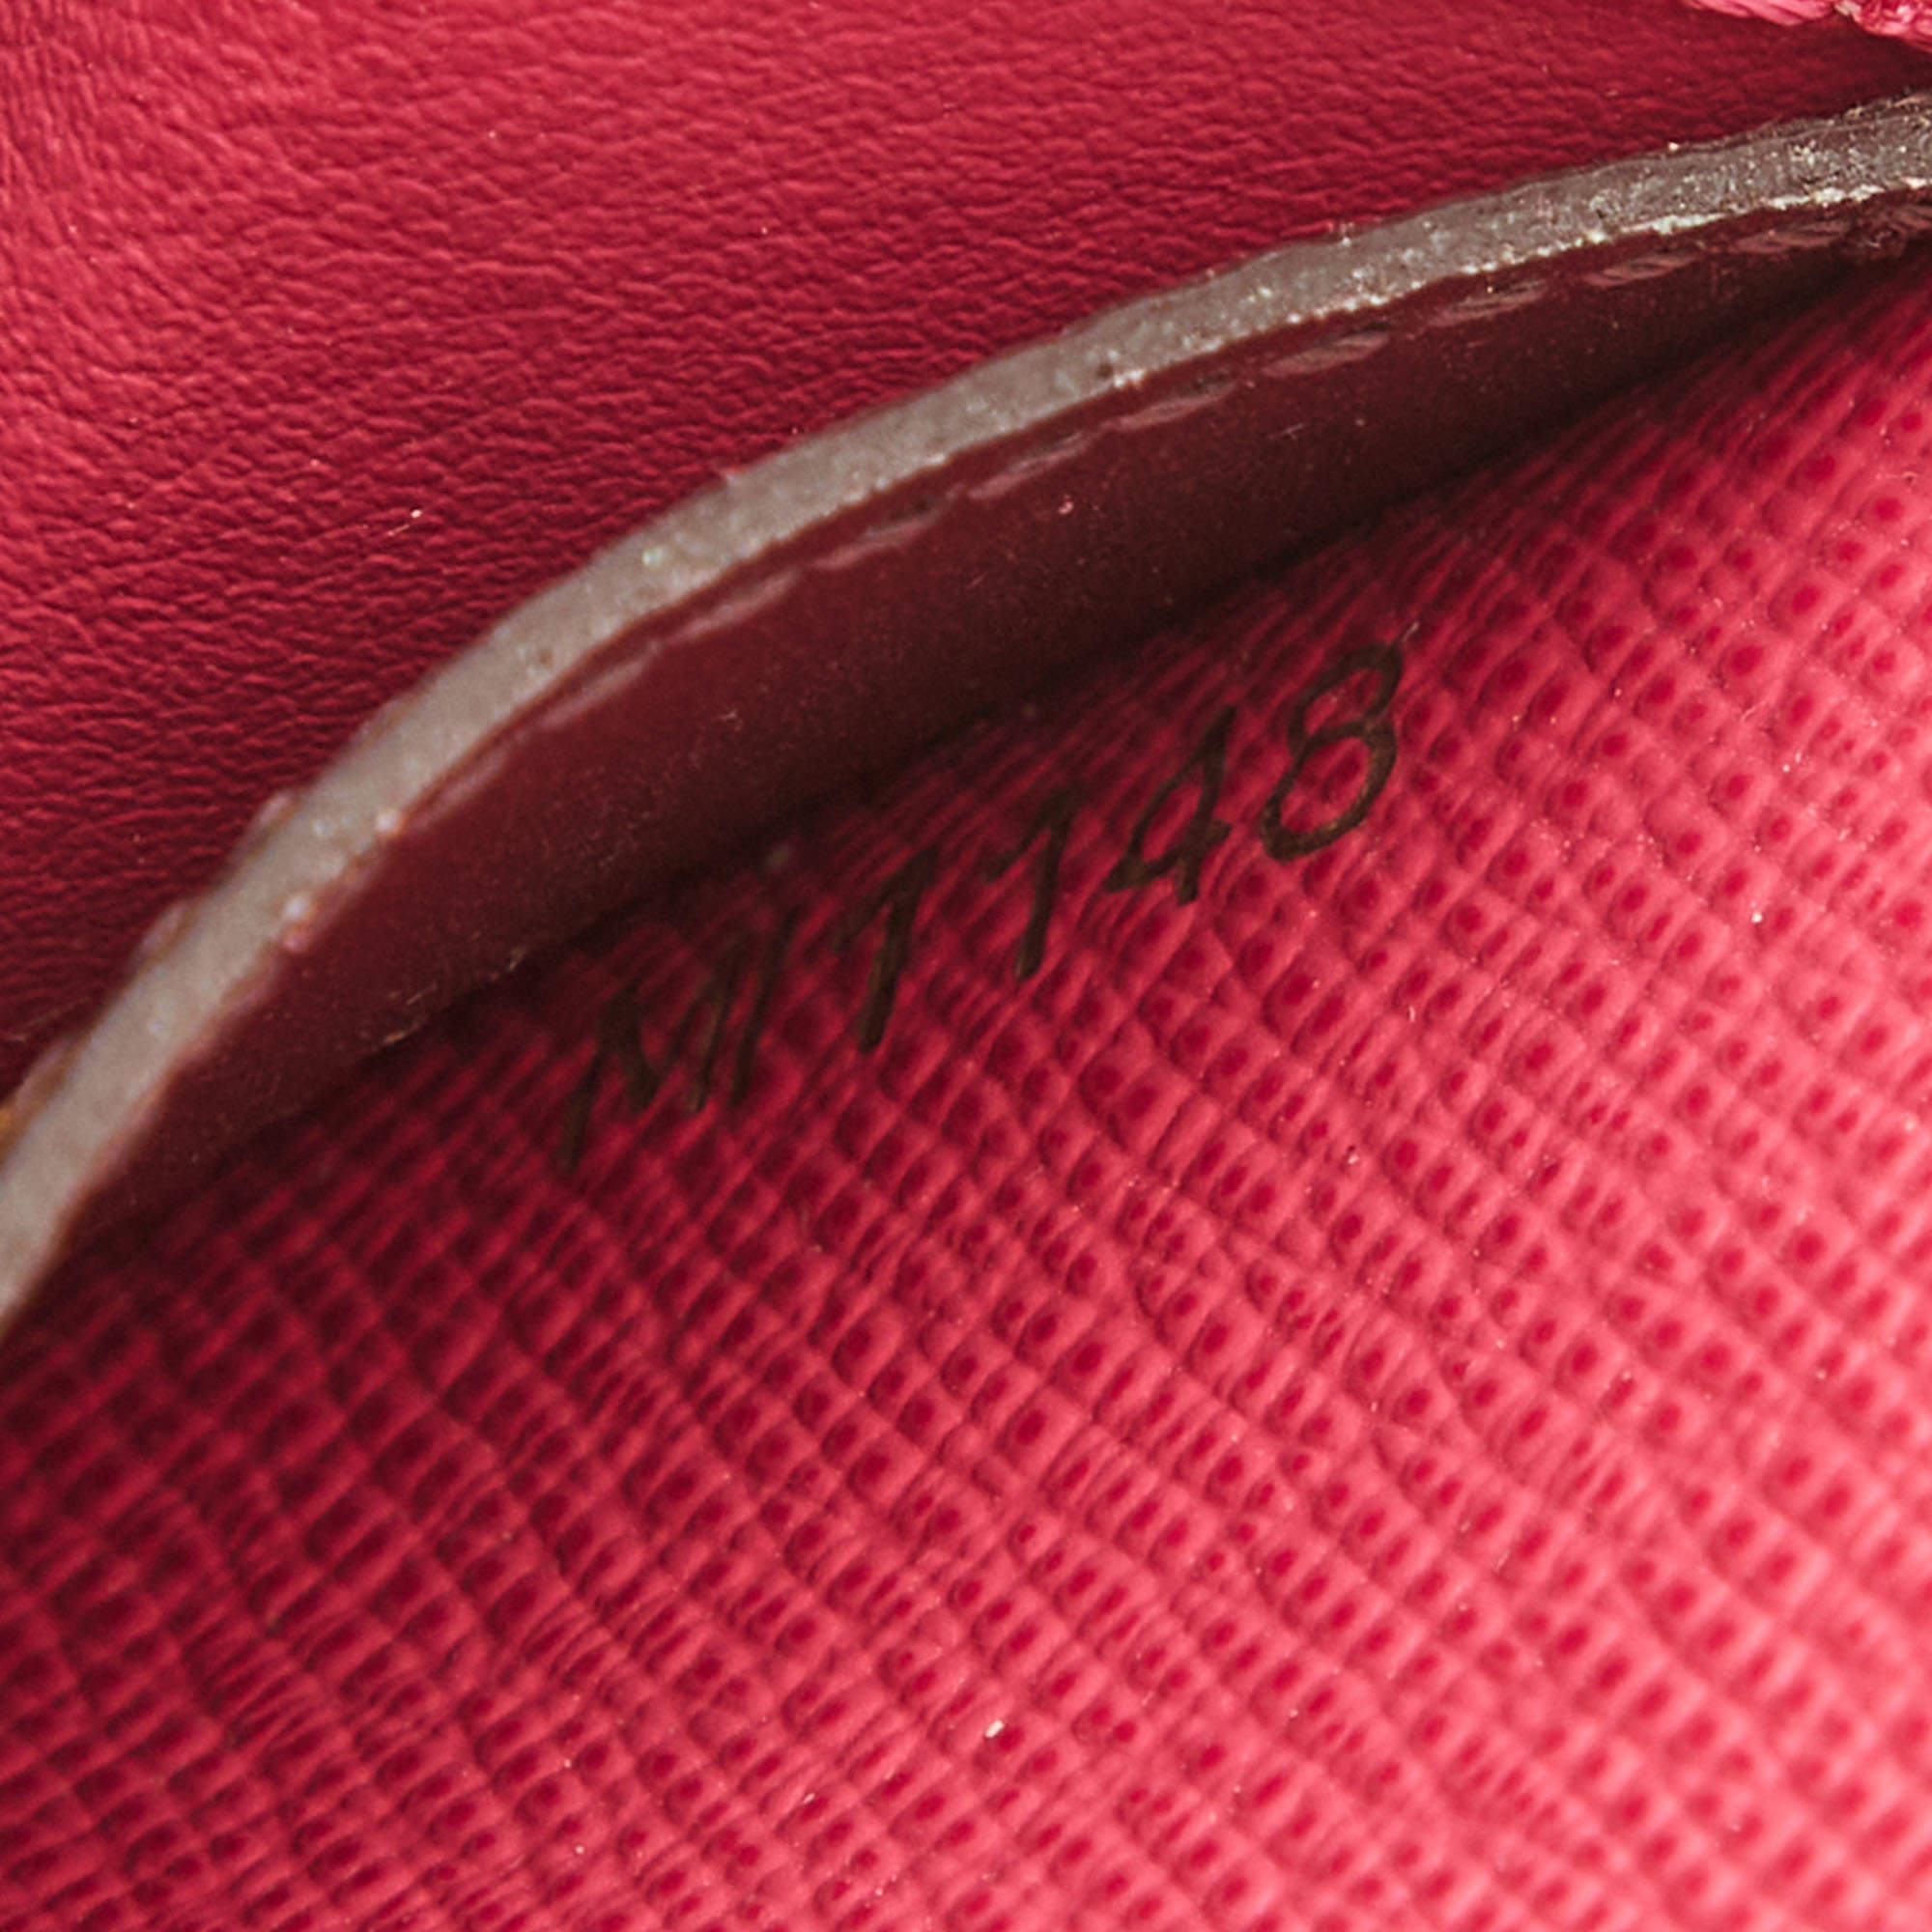 Emilie cloth wallet Louis Vuitton Multicolour in Cloth - 18555562